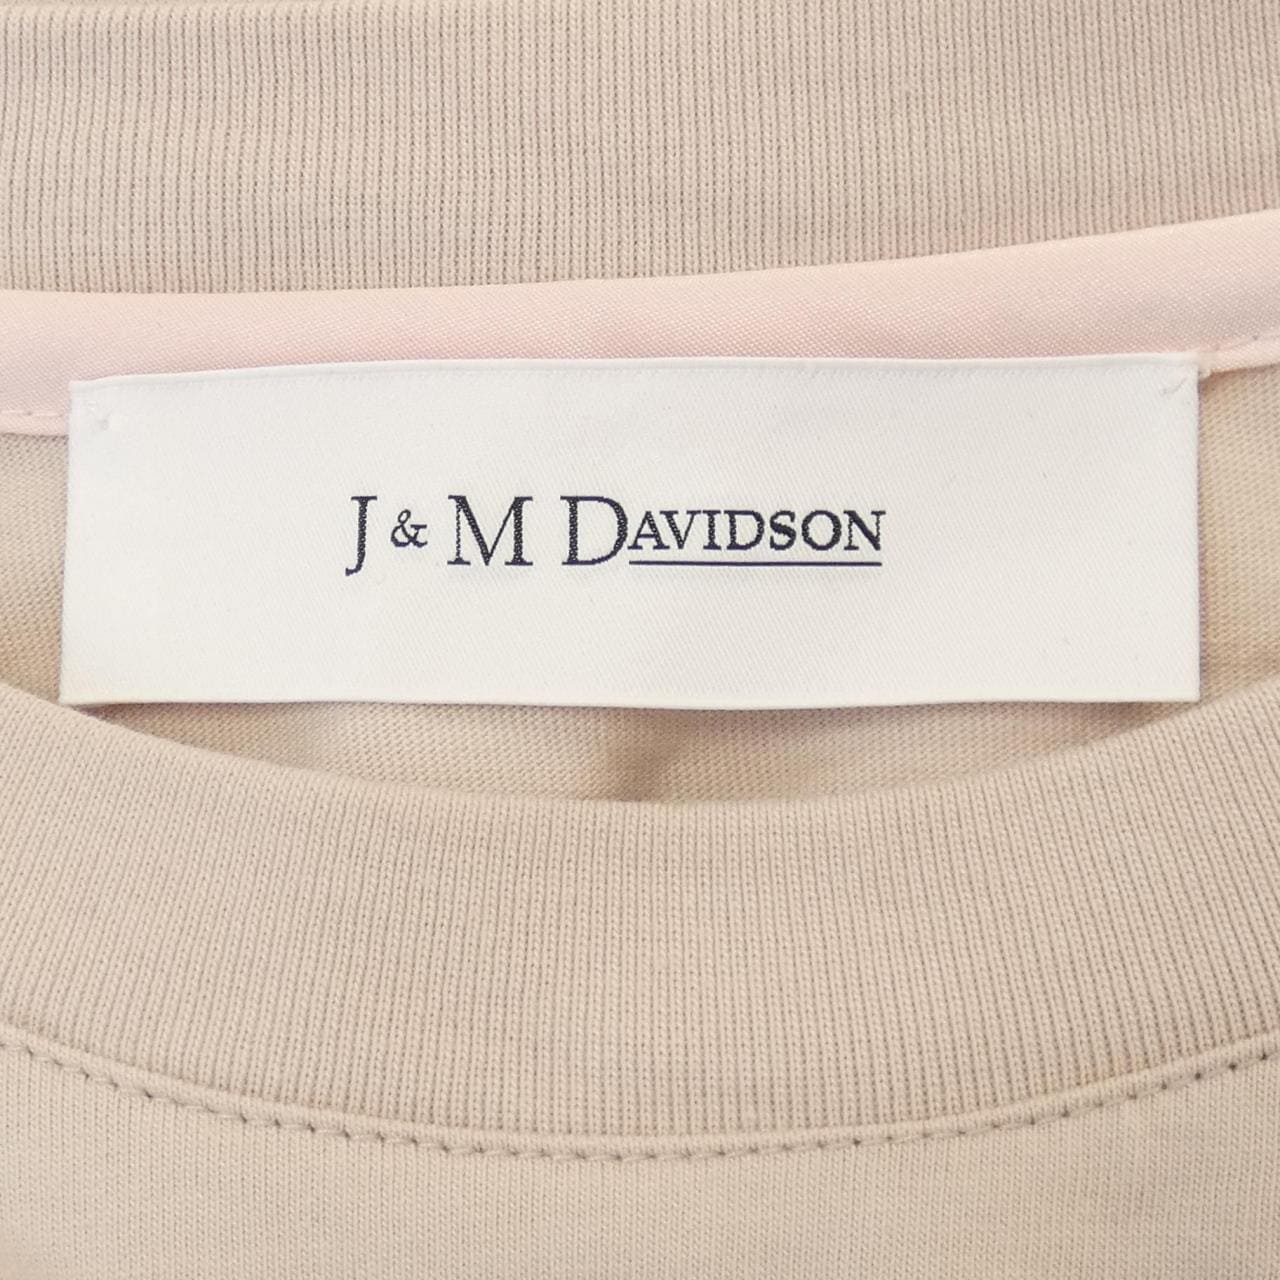 J&M DAVIDSON T-shirt